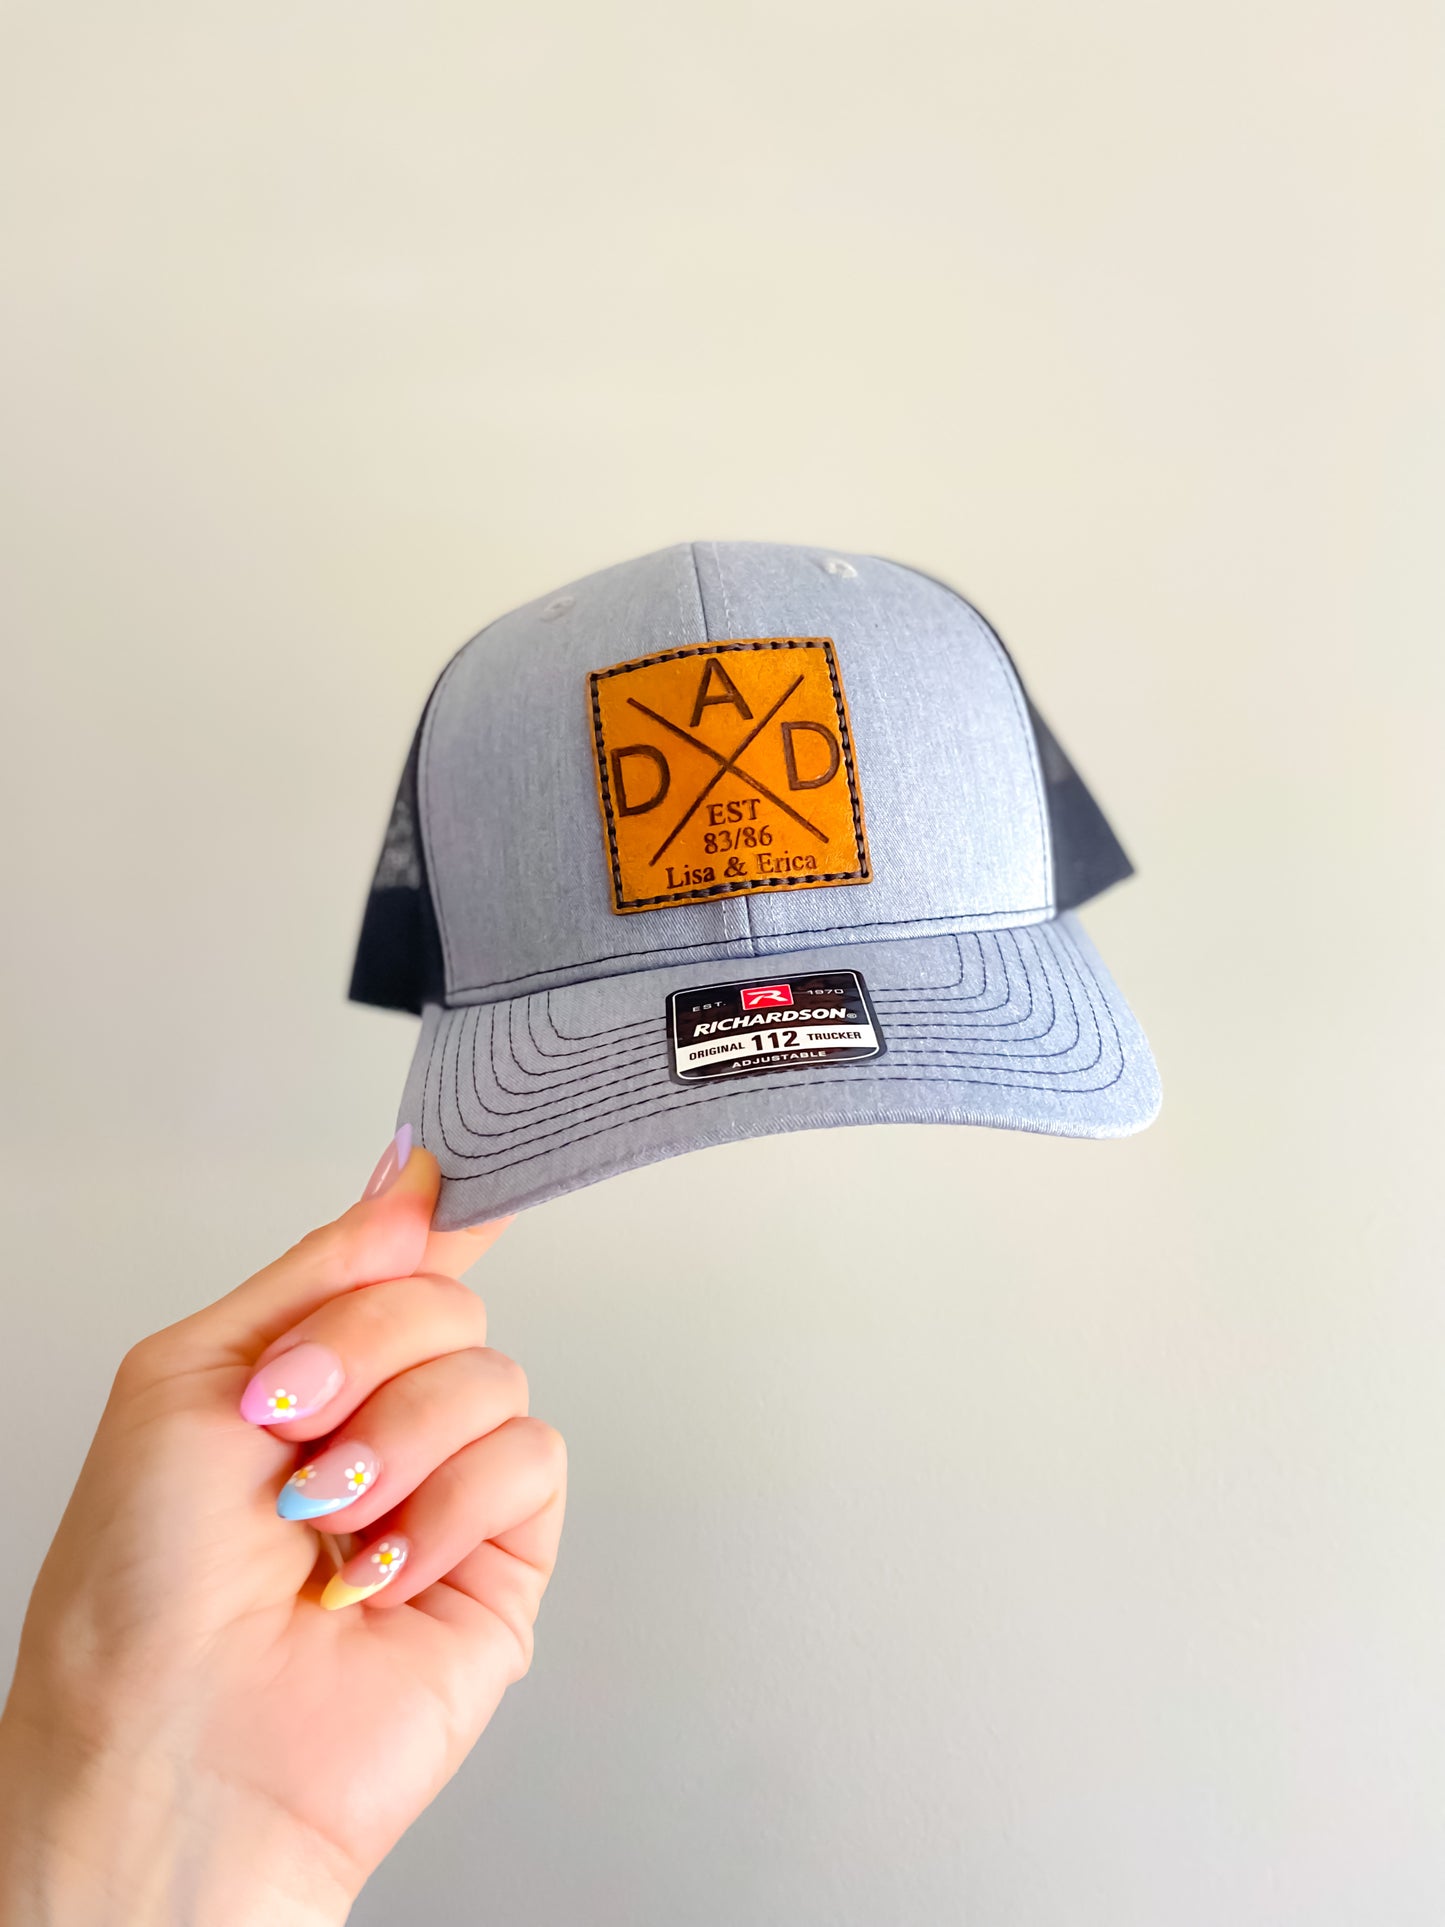 DAD Est. Custom Laser Engraved Patch Hat